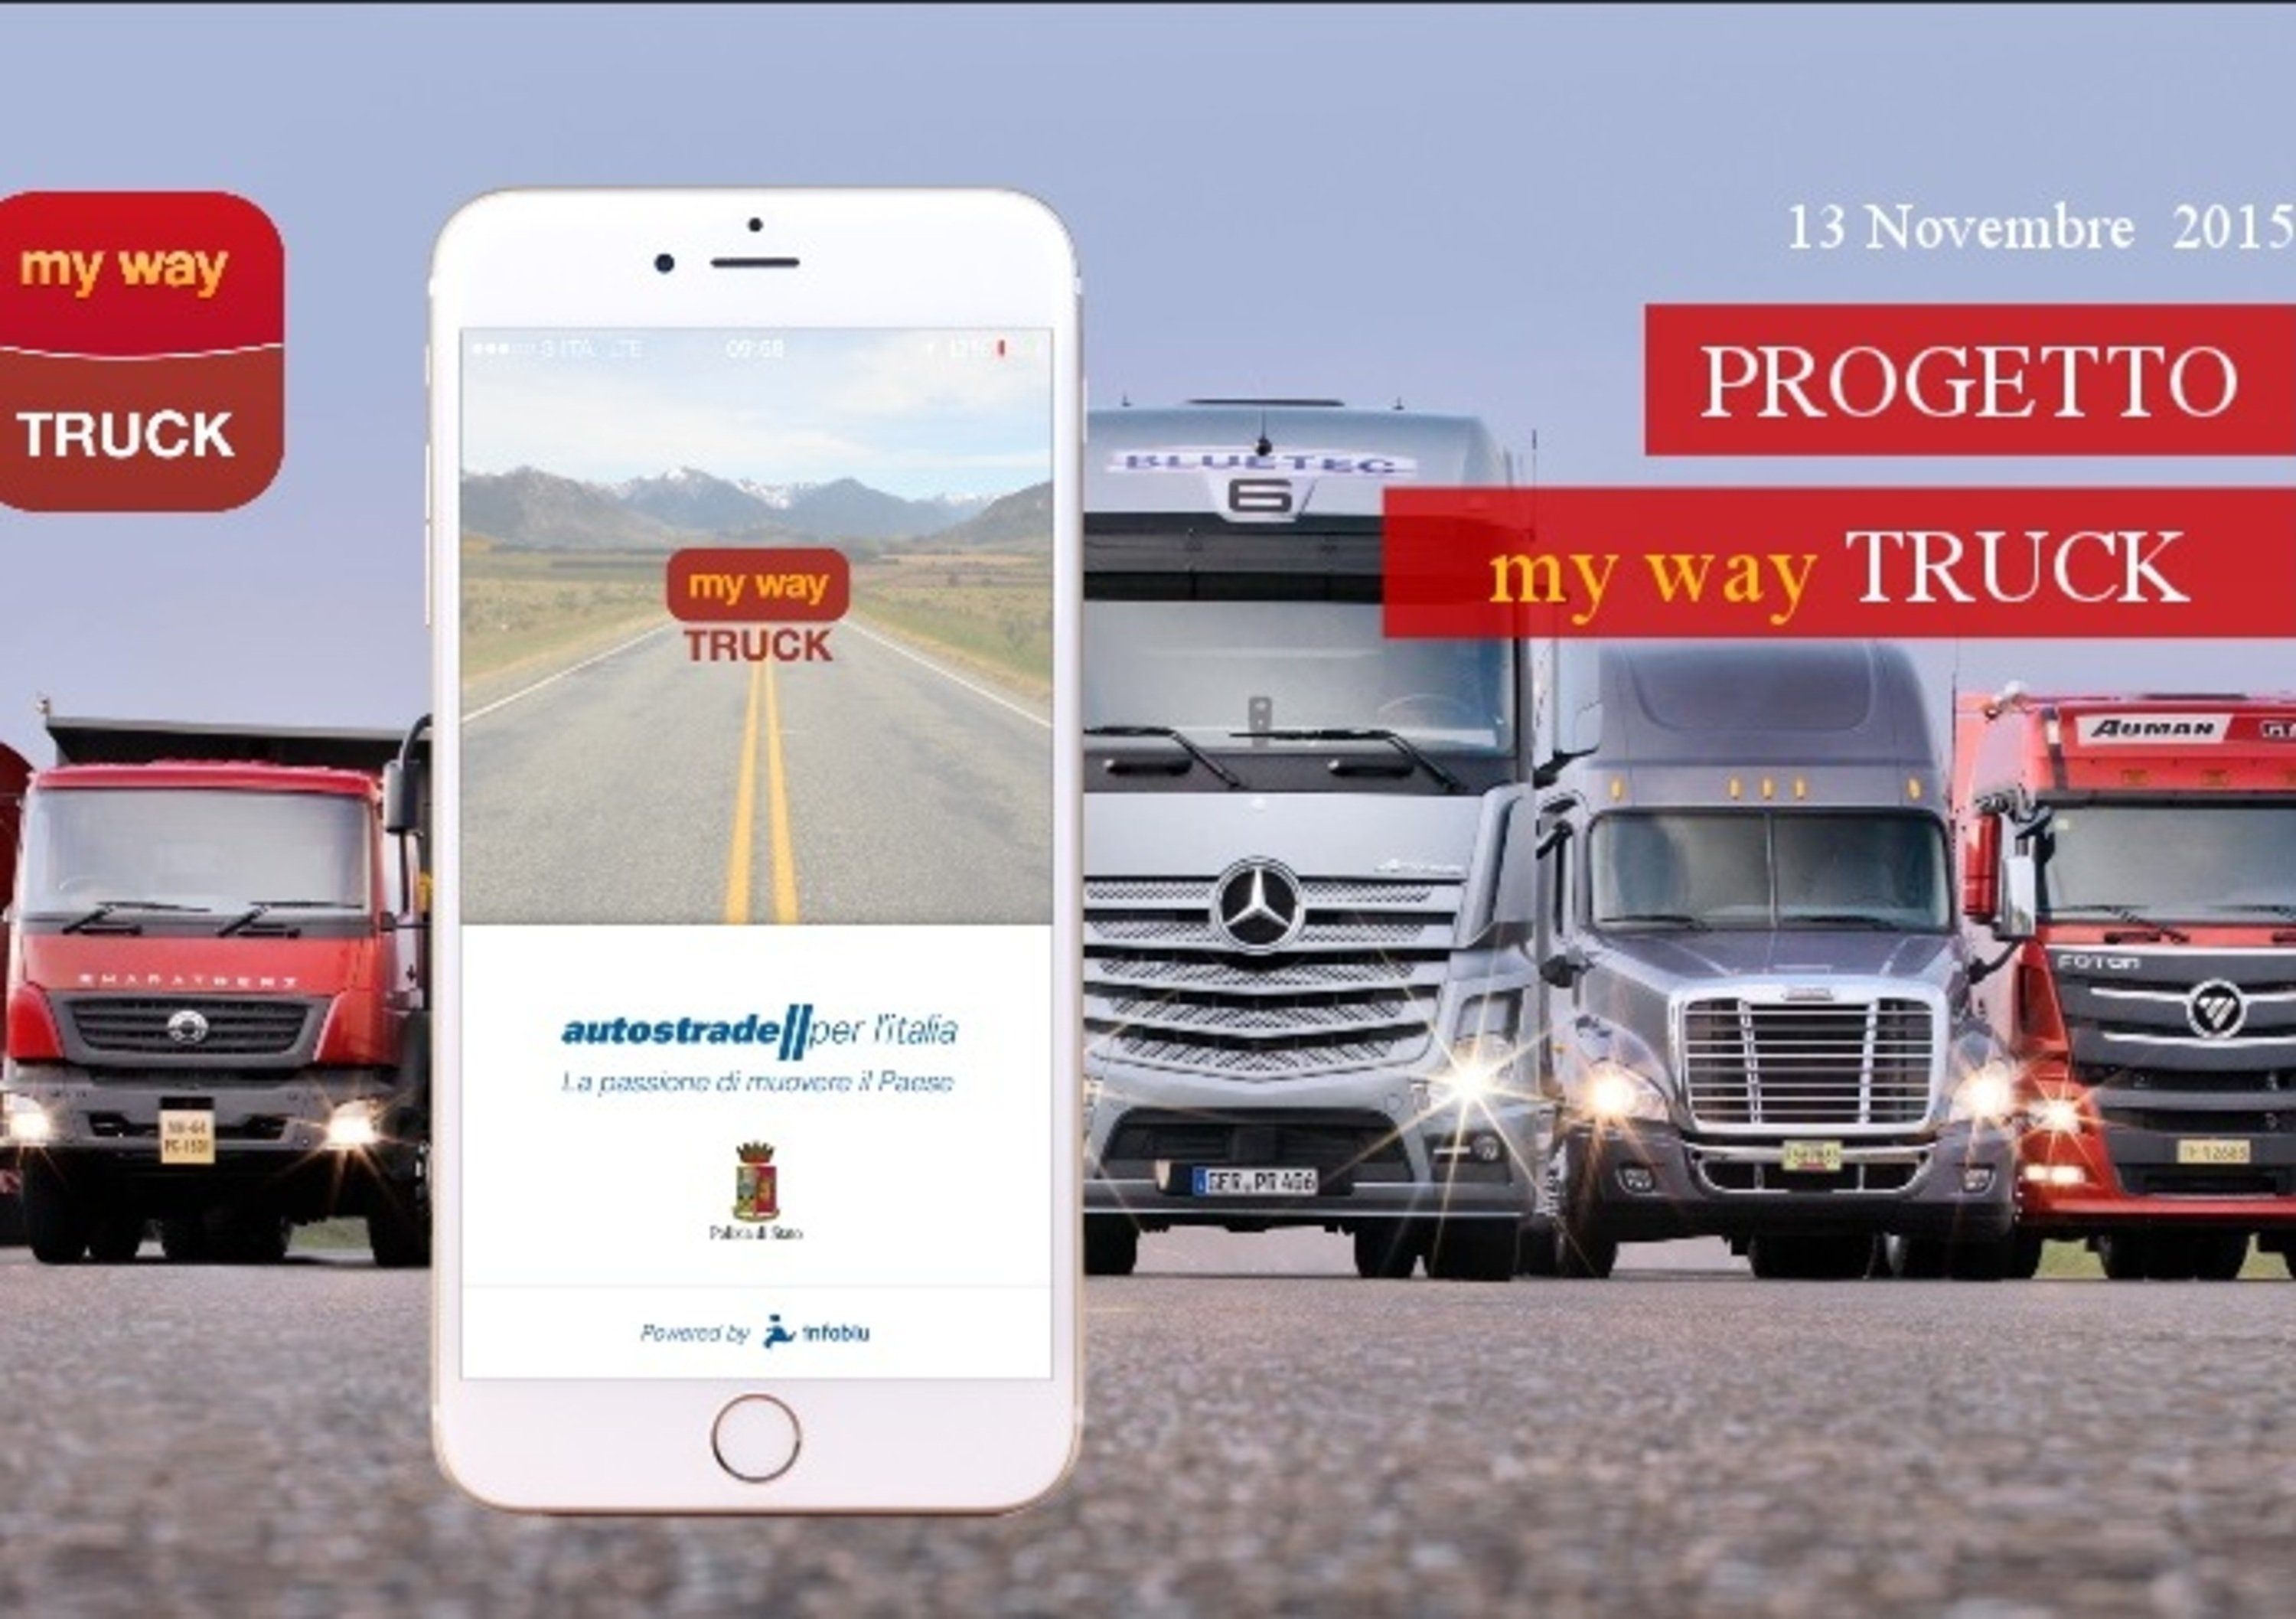 My Way Truck: la app per gli autotrasportatori